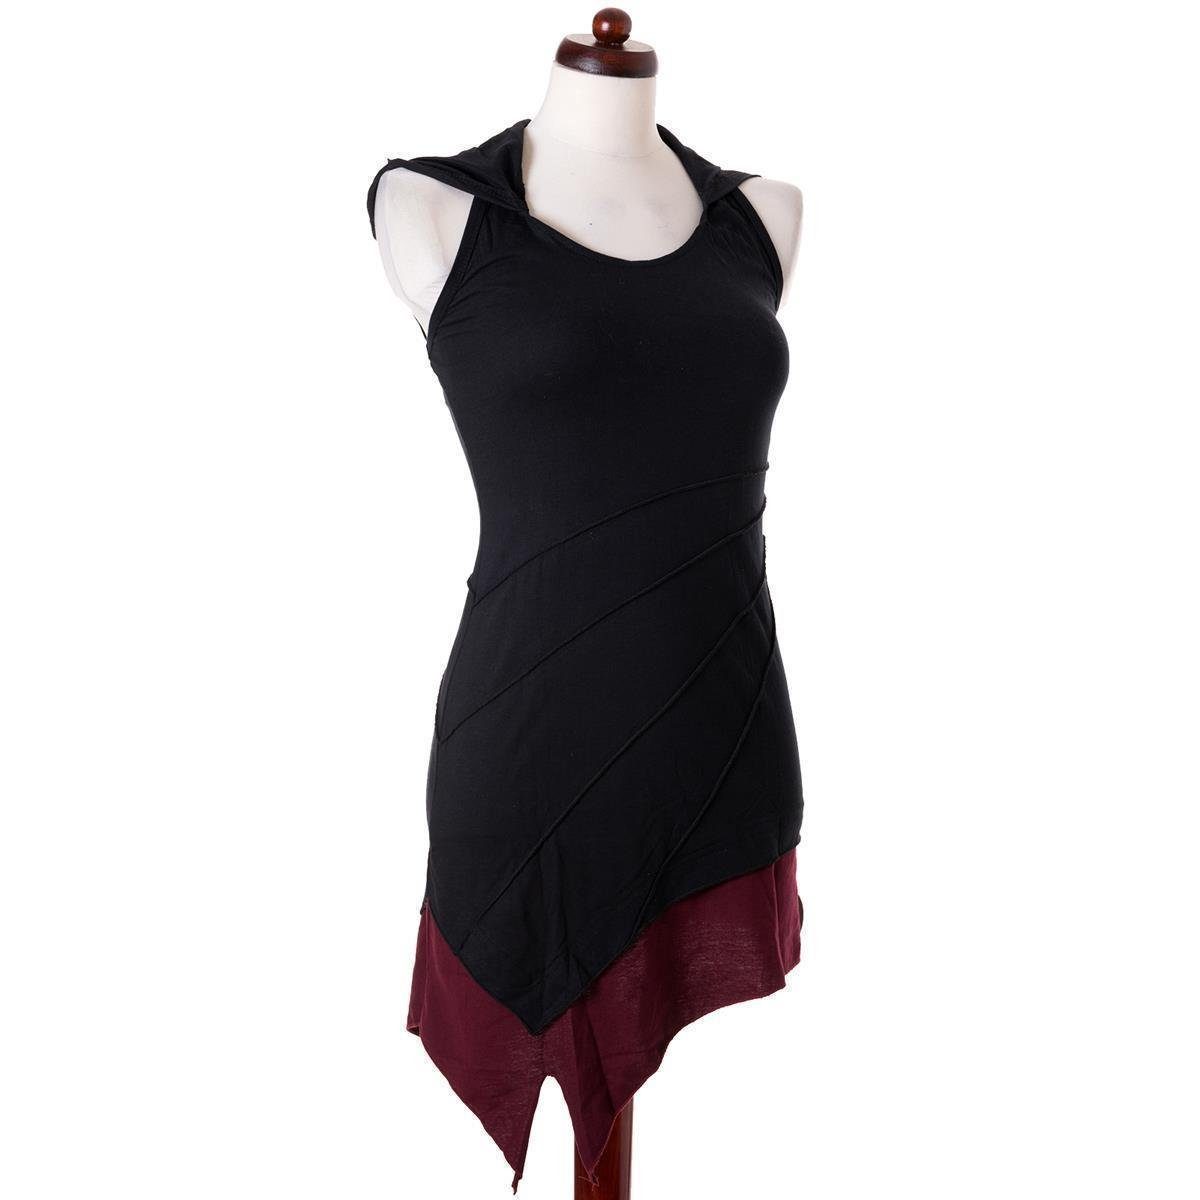 Boho Kleid Mini Neckholder zweifarbig Elfen Vishes Hippie, schwarz-rot Neckholderkleid Zipfelkleid Goa, Style